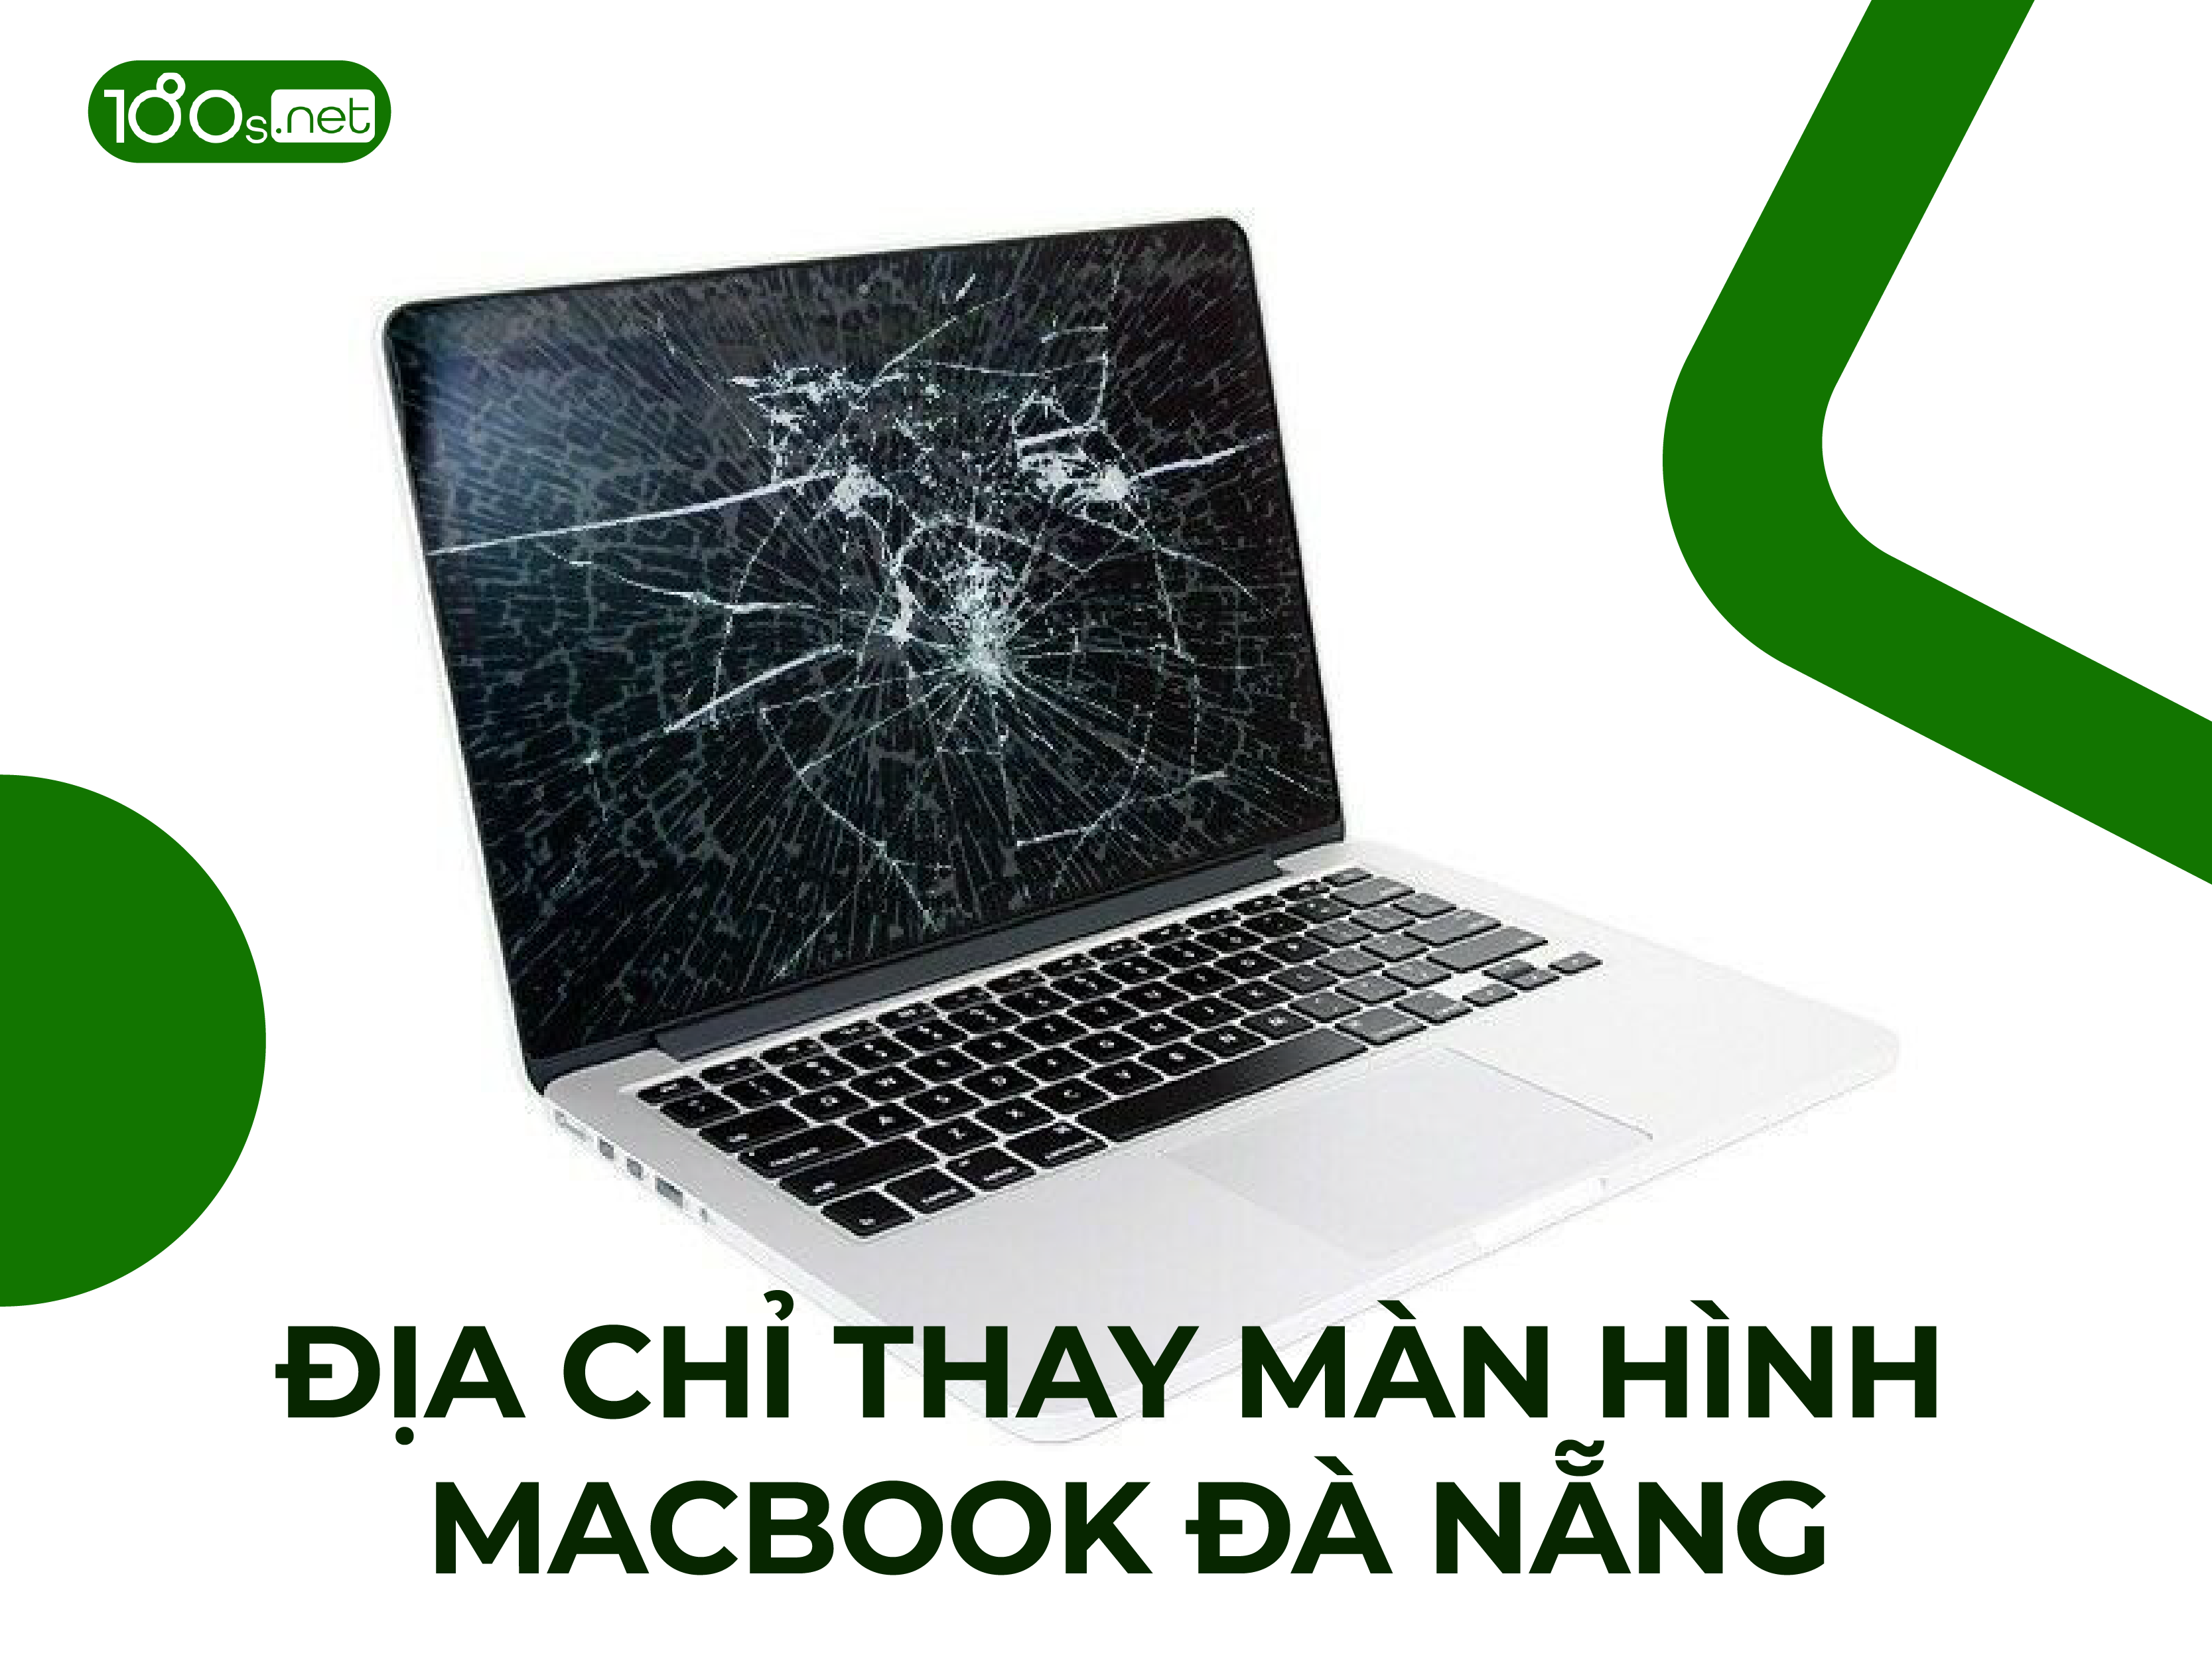 Địa chỉ thay màn hình Macbook tại Đà Nẵng